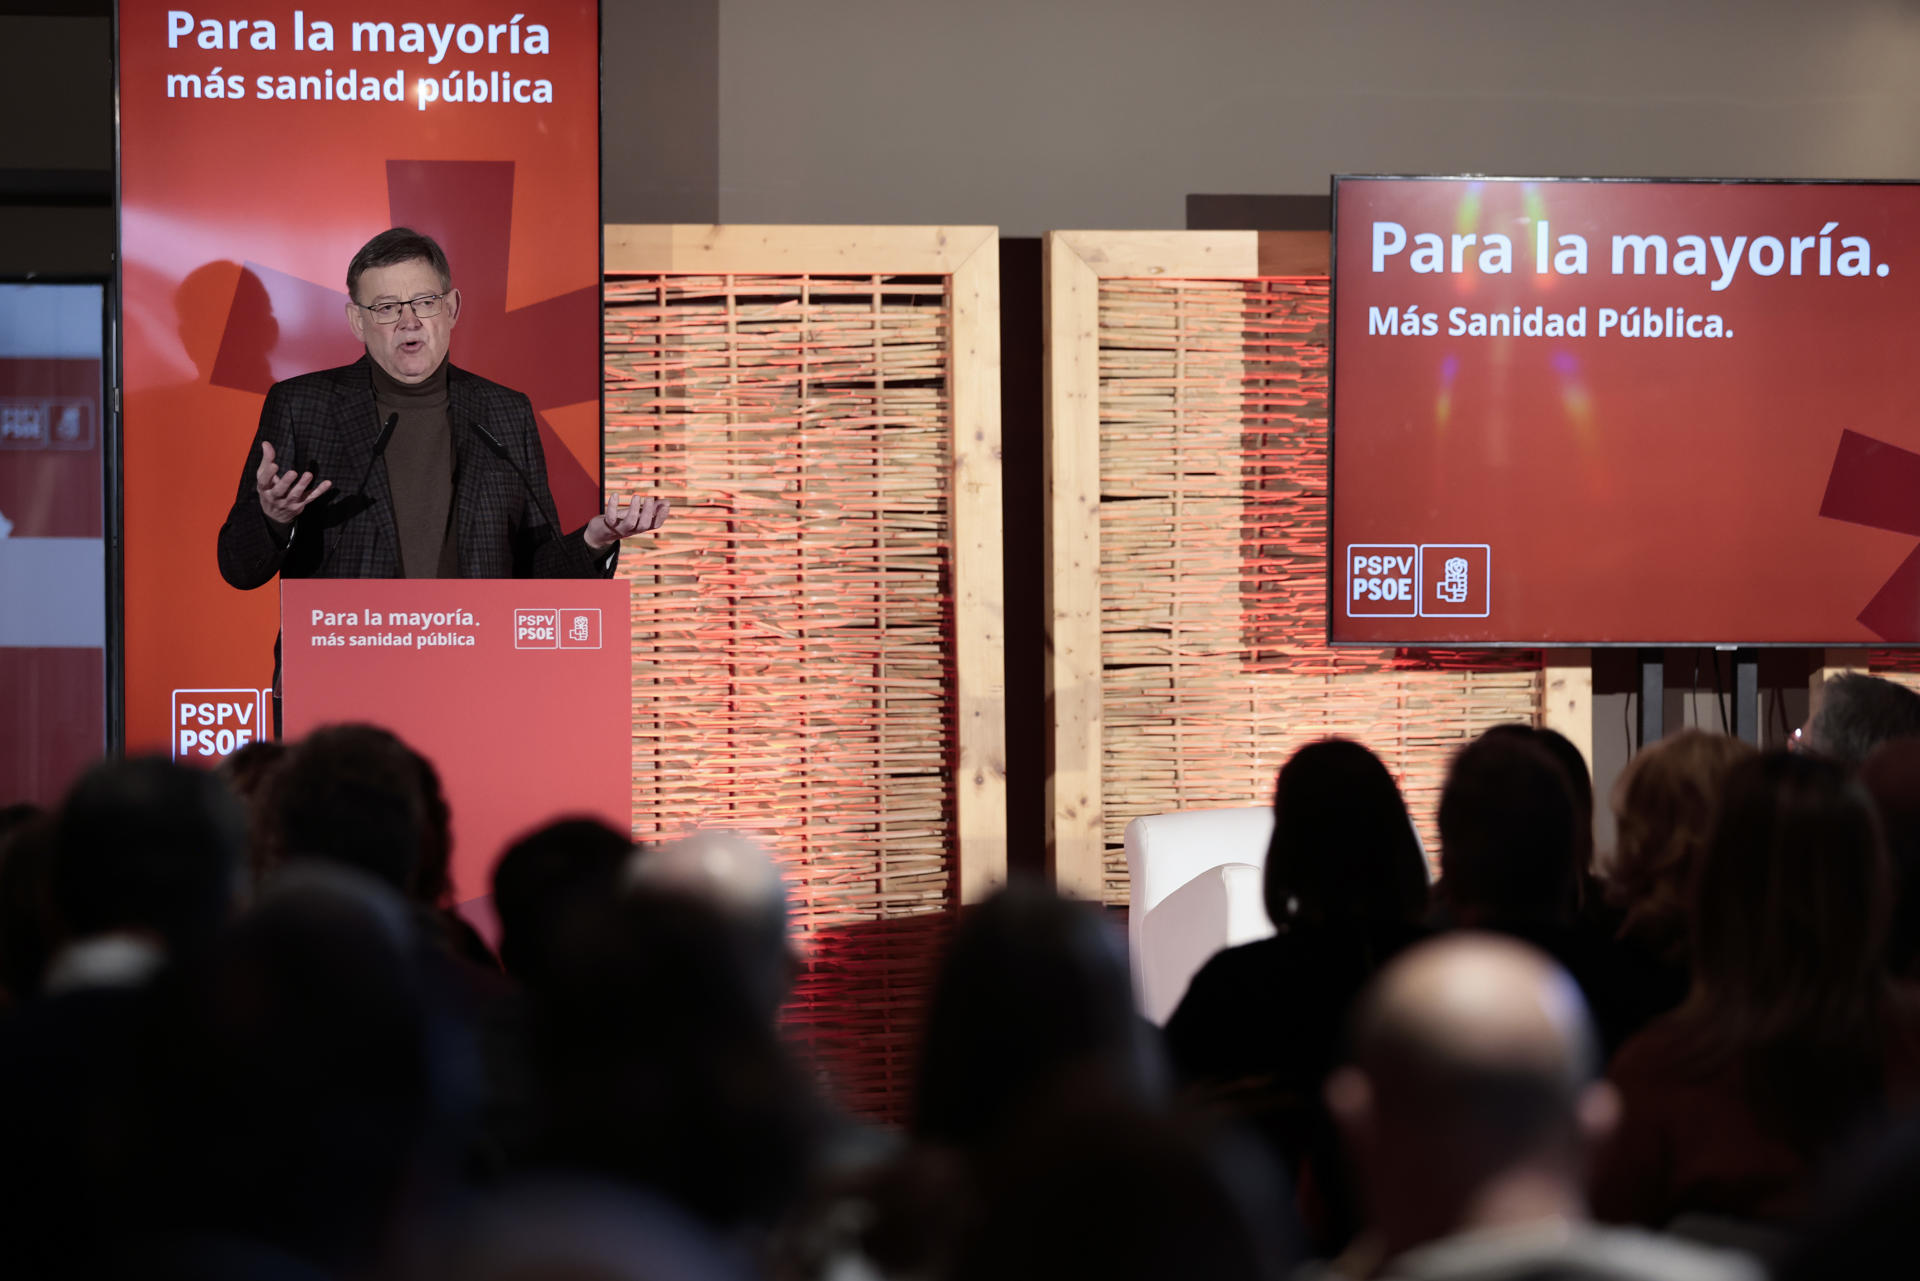 El president de la Generalitat y secretario general del PSPV-PSOE, Ximo Puig, da un discurso durante la clausura de un acto de su partido bajo el lema "Más sanidad pública", este sábado en Valencia. EFE/ Ana Escobar